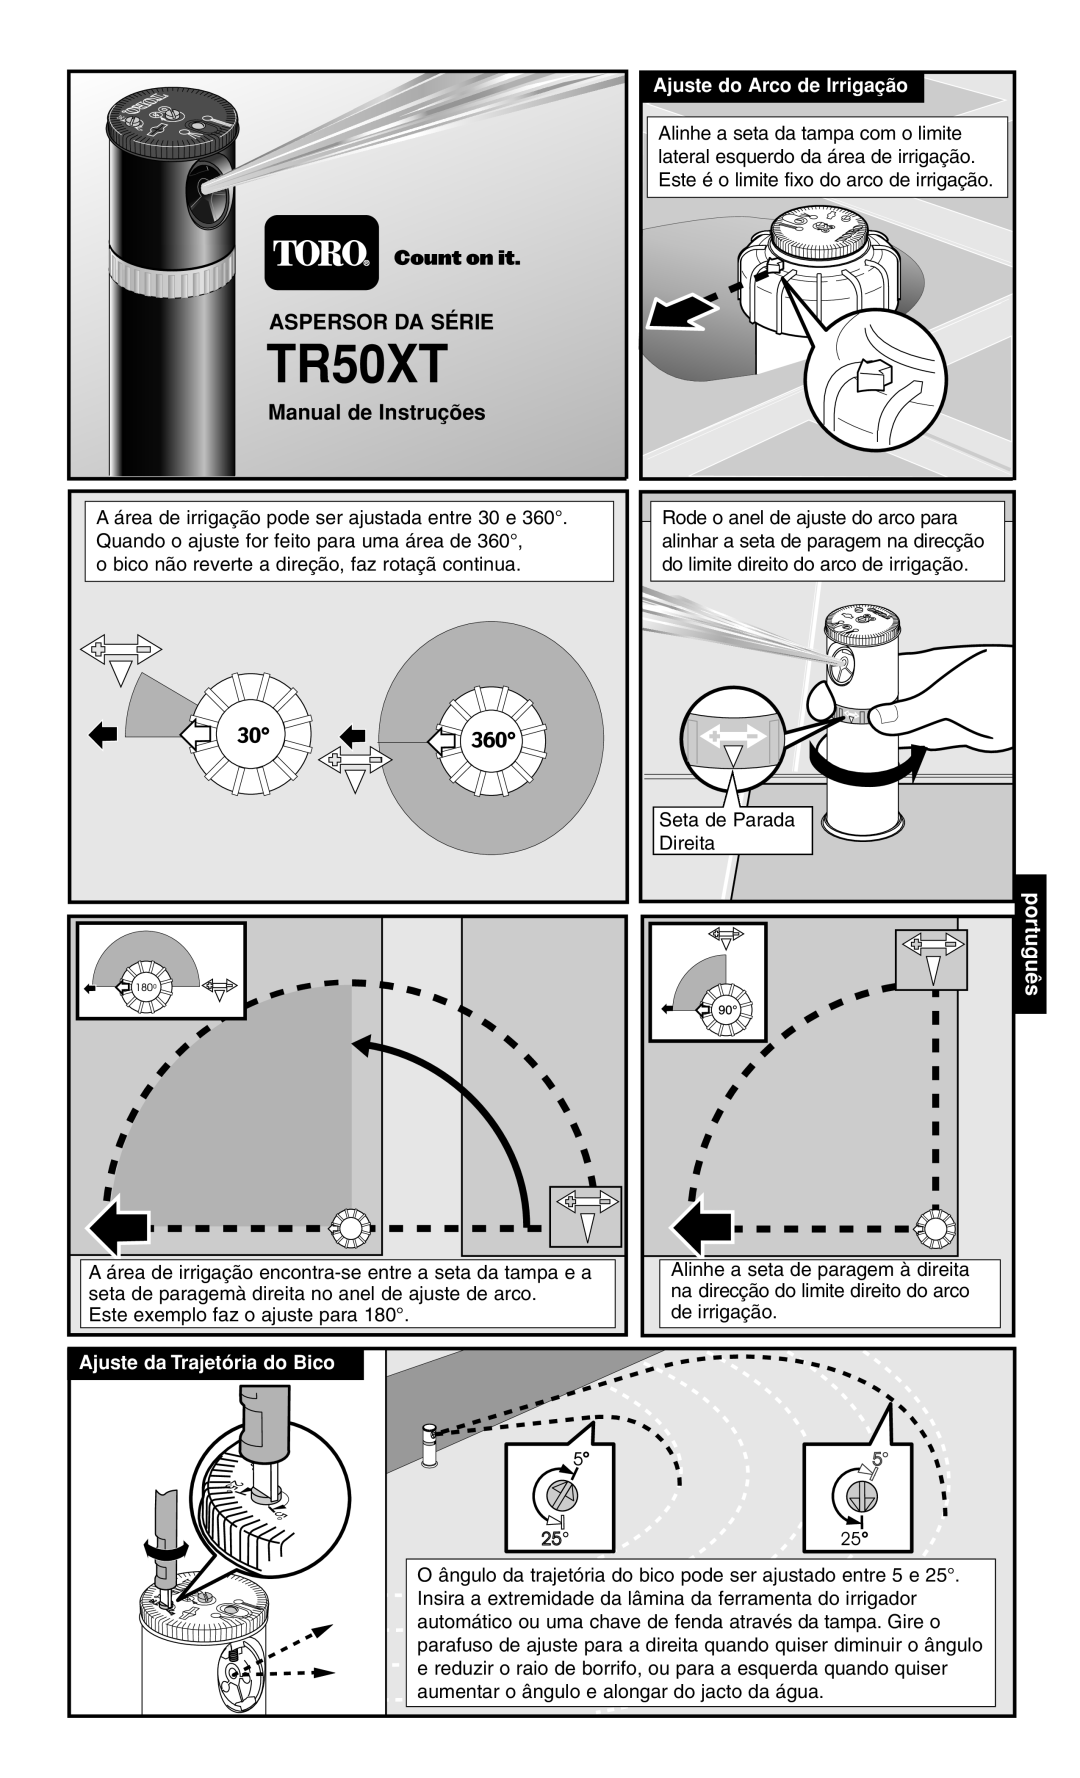 Toro TR50XT SERIES ROTOR manual Manual de Instruções, português, Ajuste do Arco de Irrigação, Ajuste da Trajetória do Bico 